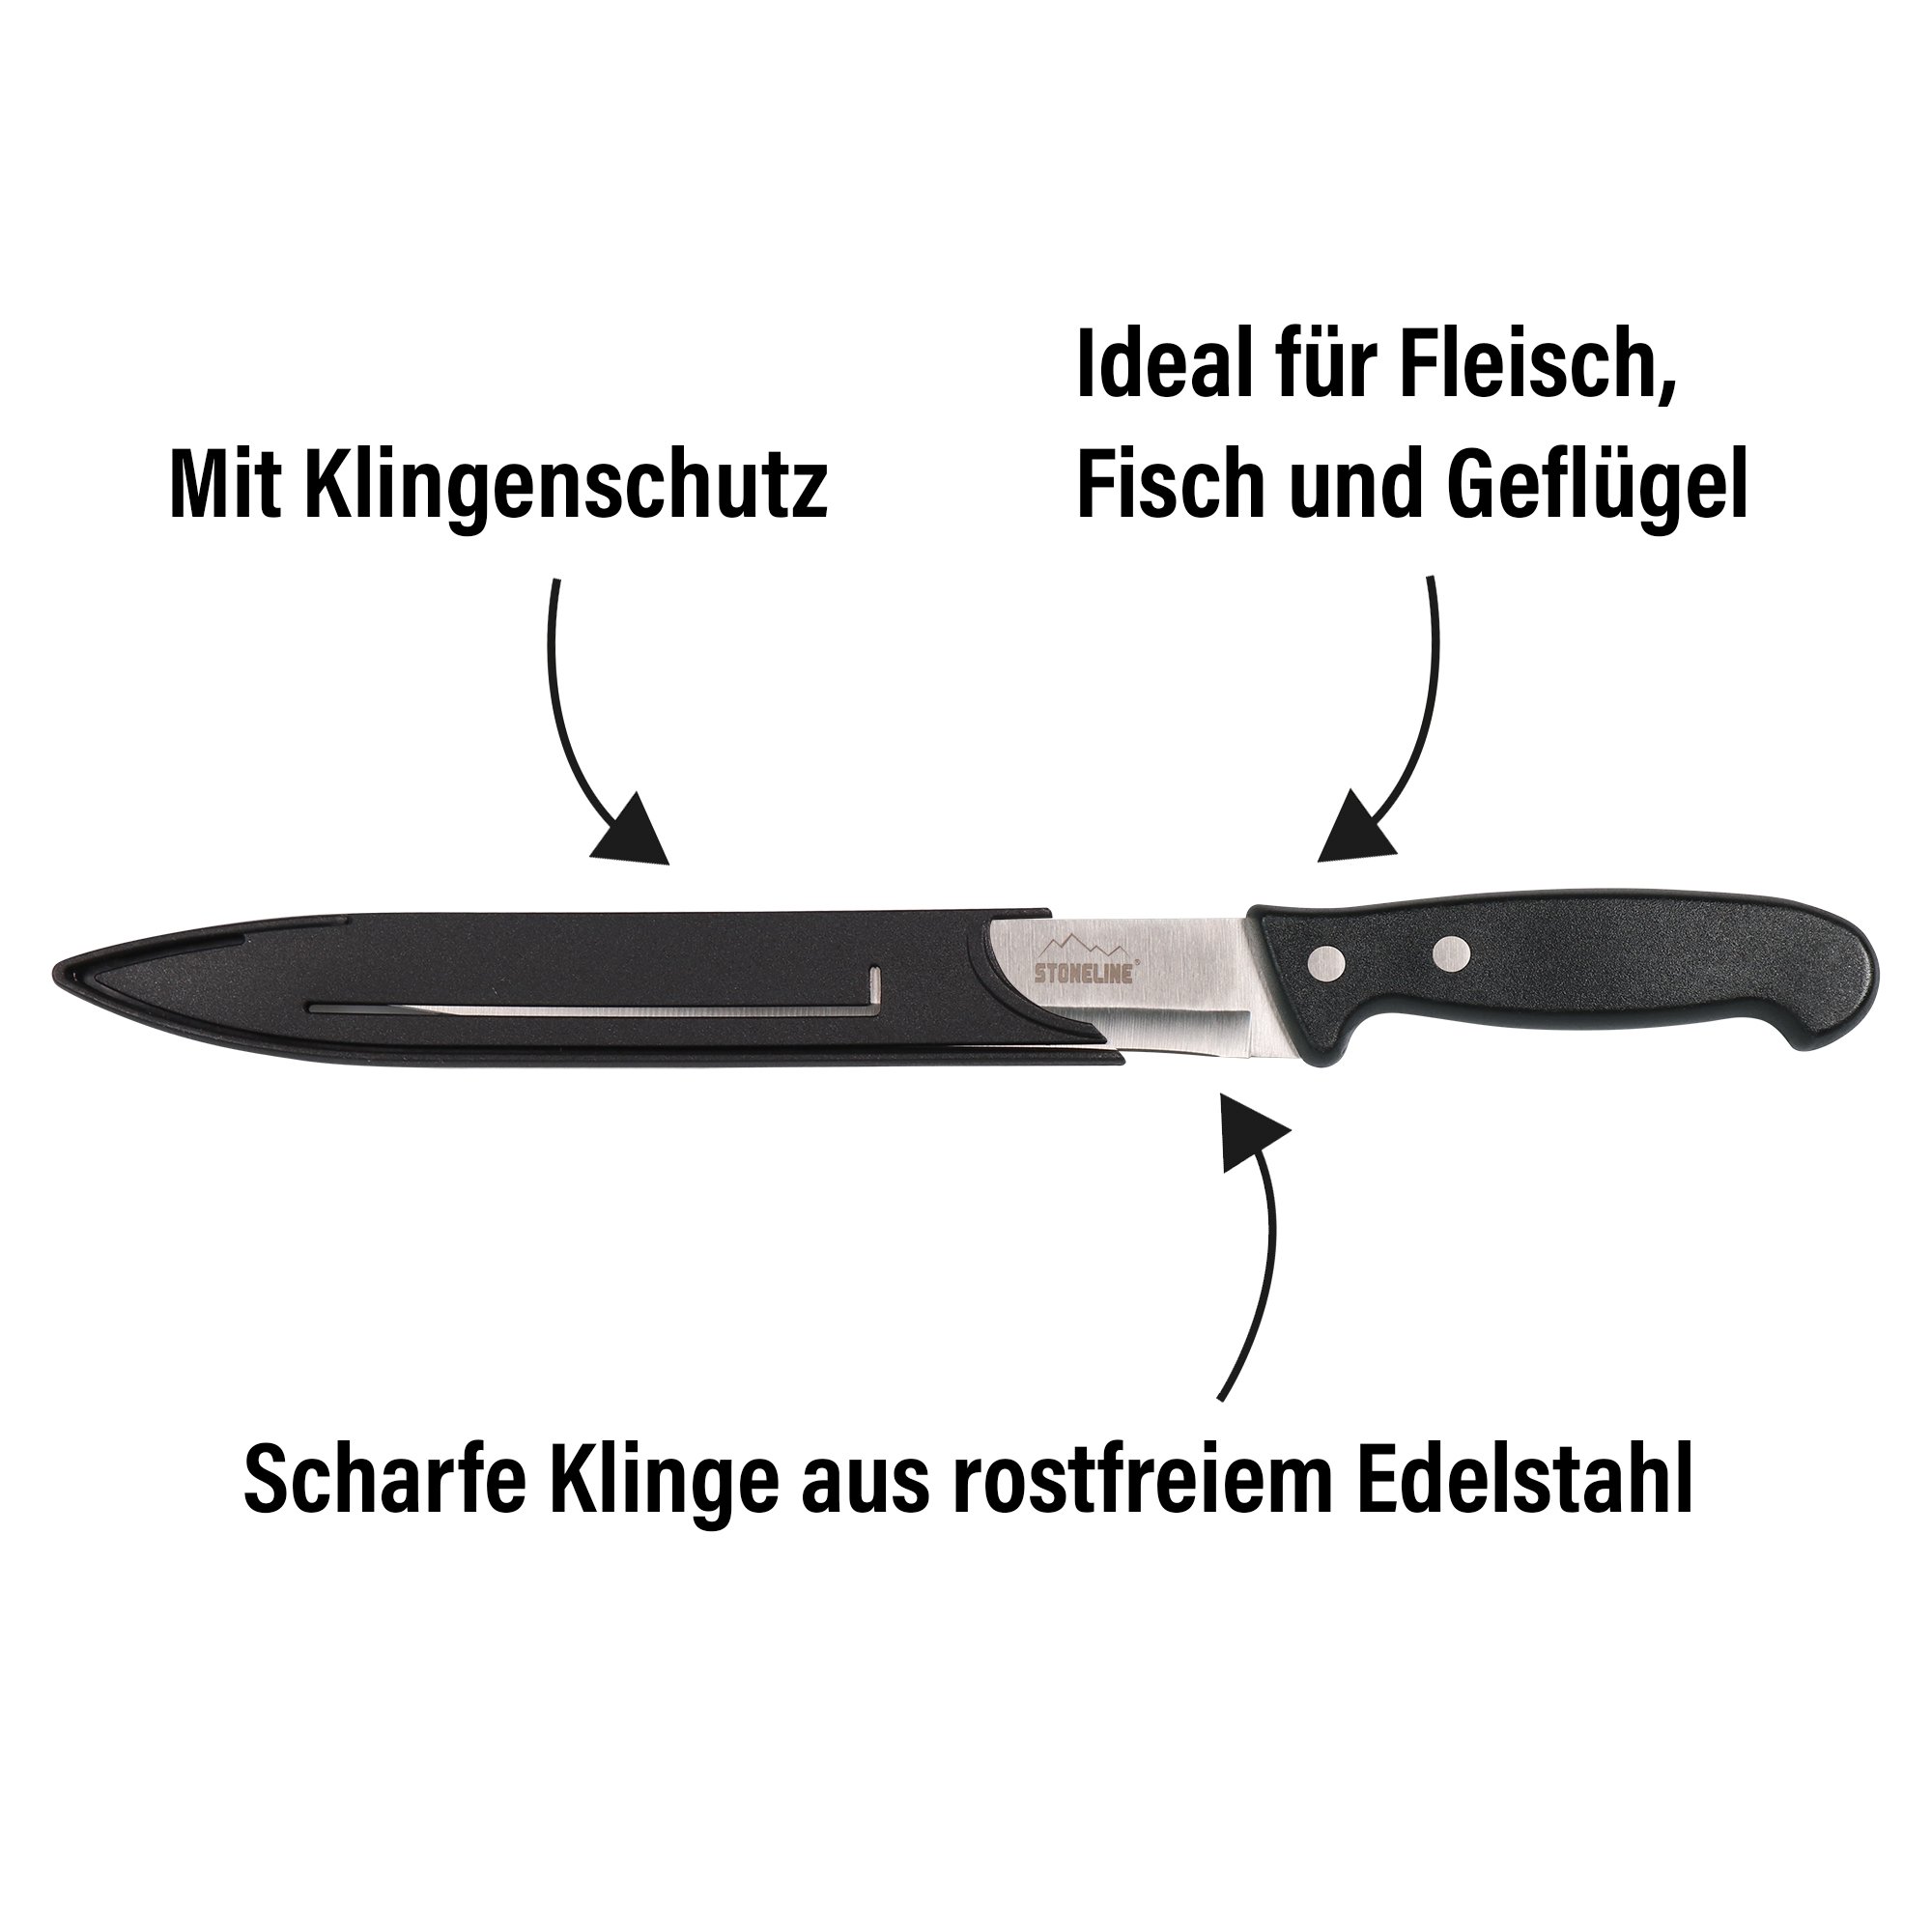 Cuchillo para carne STONELINE® de 31,5 cm, con protector de hoja